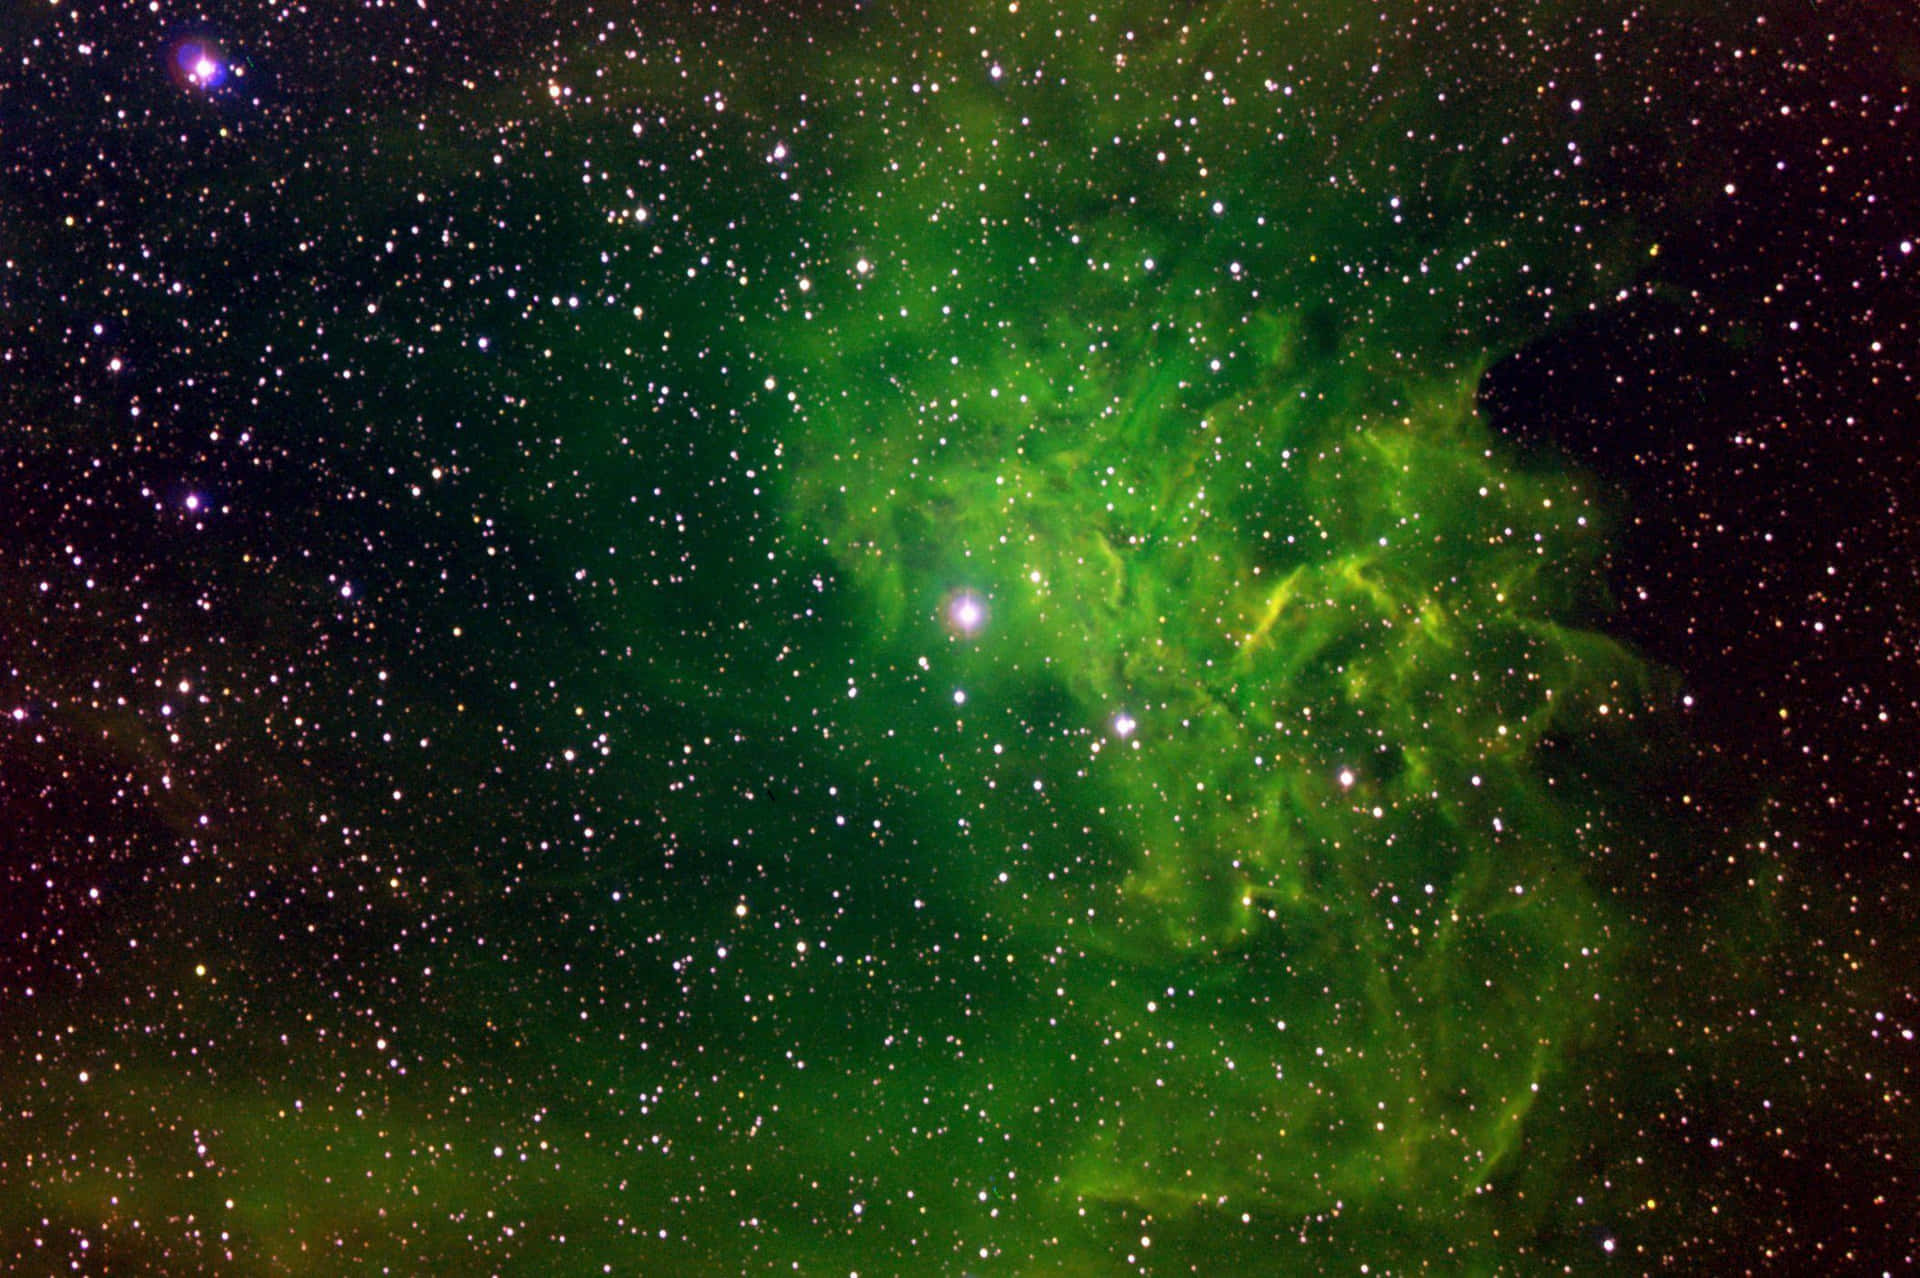 Udforsk “Green Galaxy” - et åndeløst panorama af stjerner, nøgne og galakser! Wallpaper